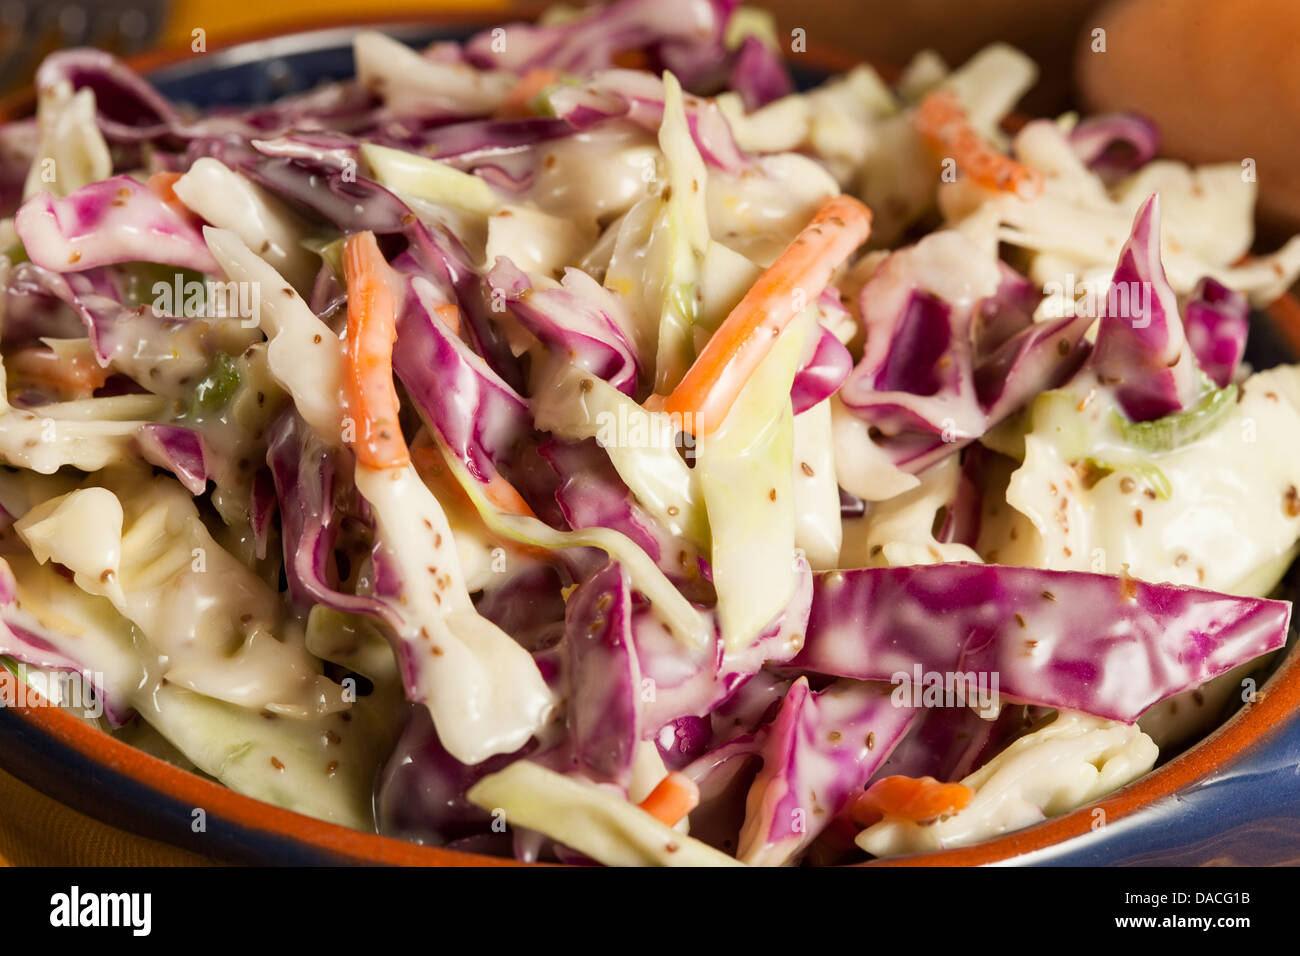 Coleslaw casero con repollo, zanahoria rallada y lechuga Foto de stock